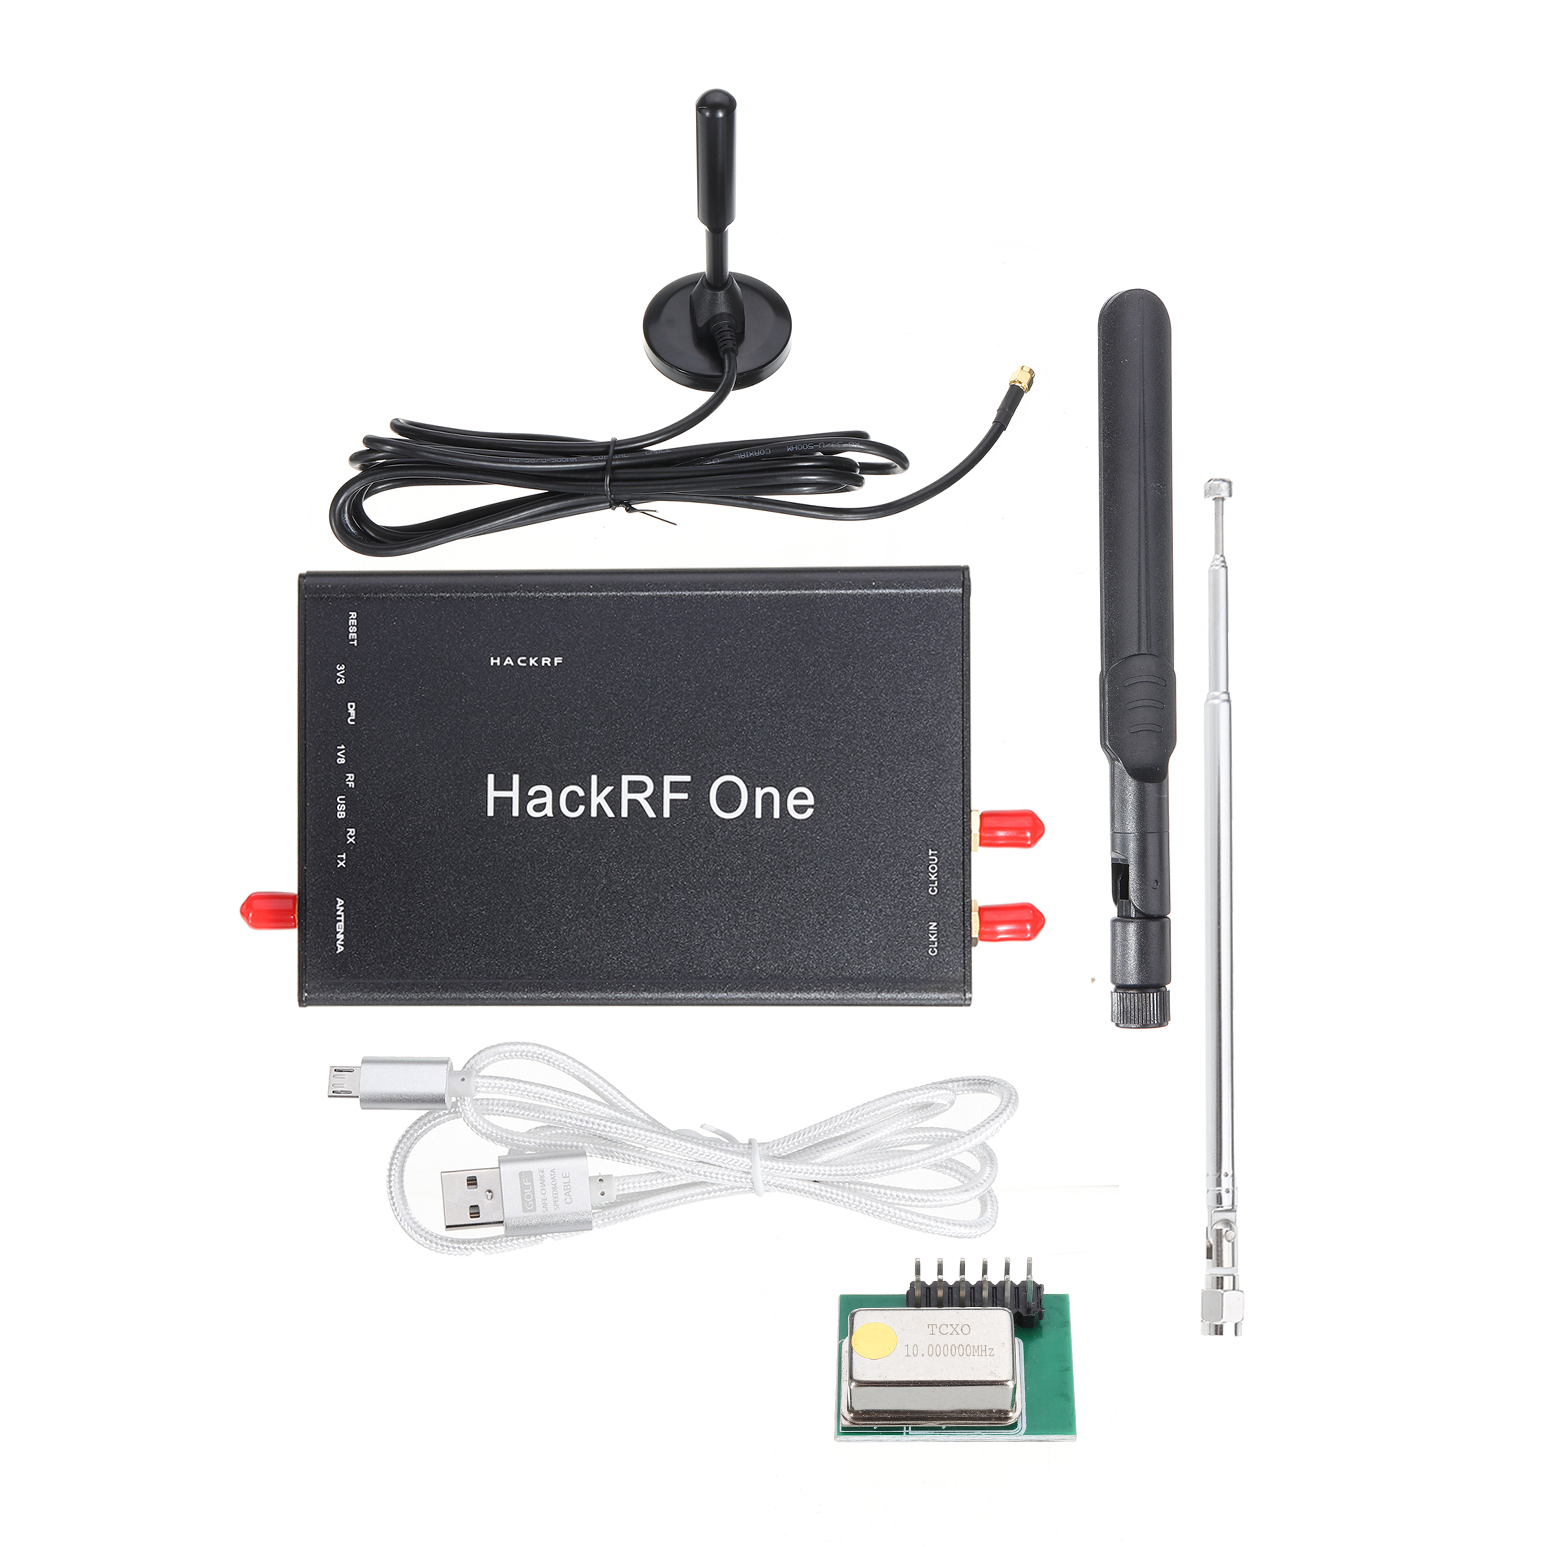 

HackRF One Программно-определяемый RTL SDR Радио Платформа USB Прием сигналов от 1 МГц до 6 ГГц Программная демонстрацио